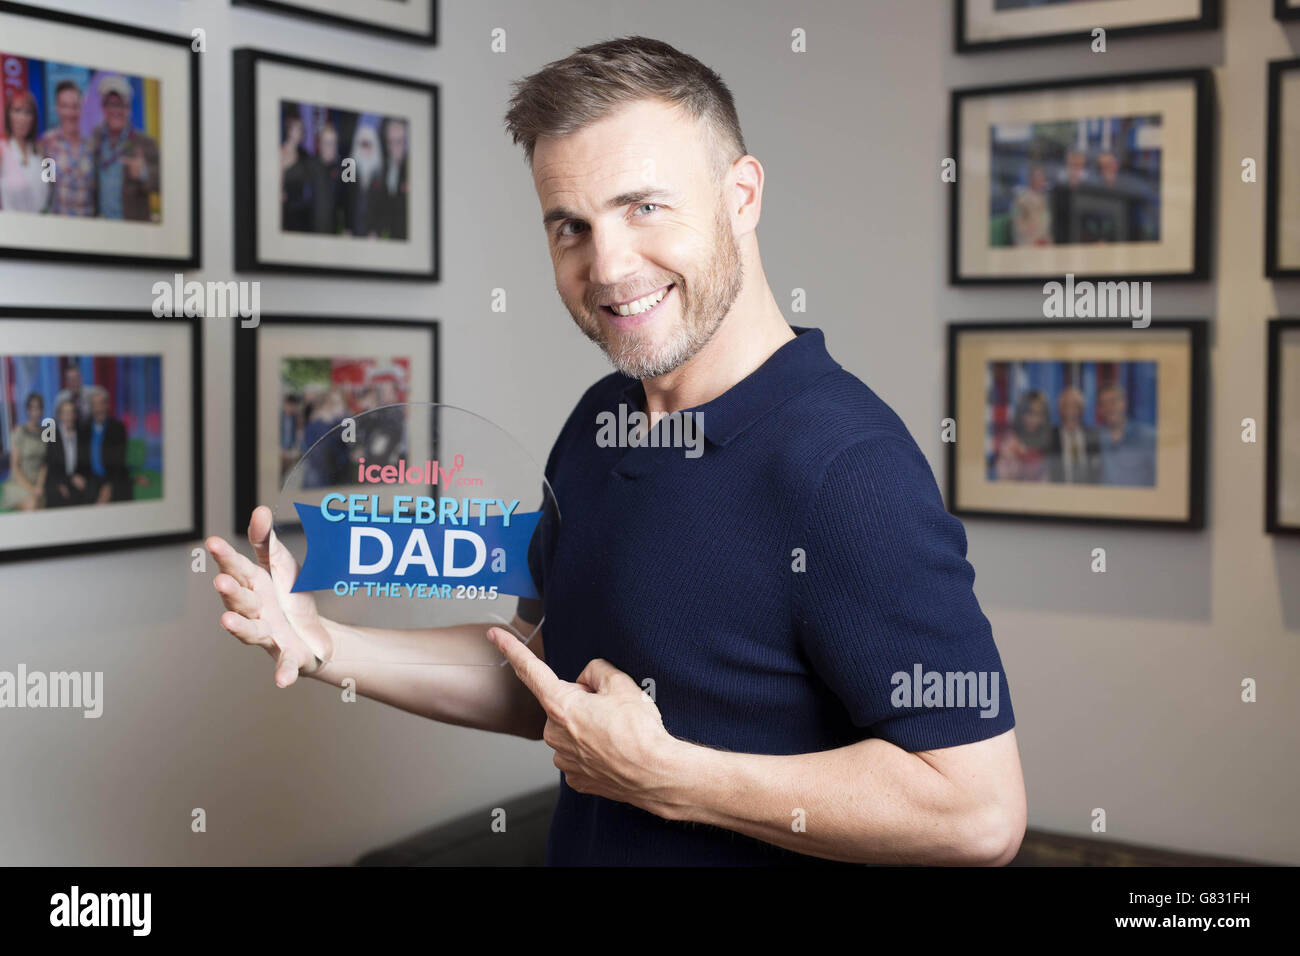 Gary Barlow viene annunciato come icelolly.com's Celebrity Dad of the Year 2015, presso i BBC Studios, presso la New Broadcasting House di Londra. Foto Stock